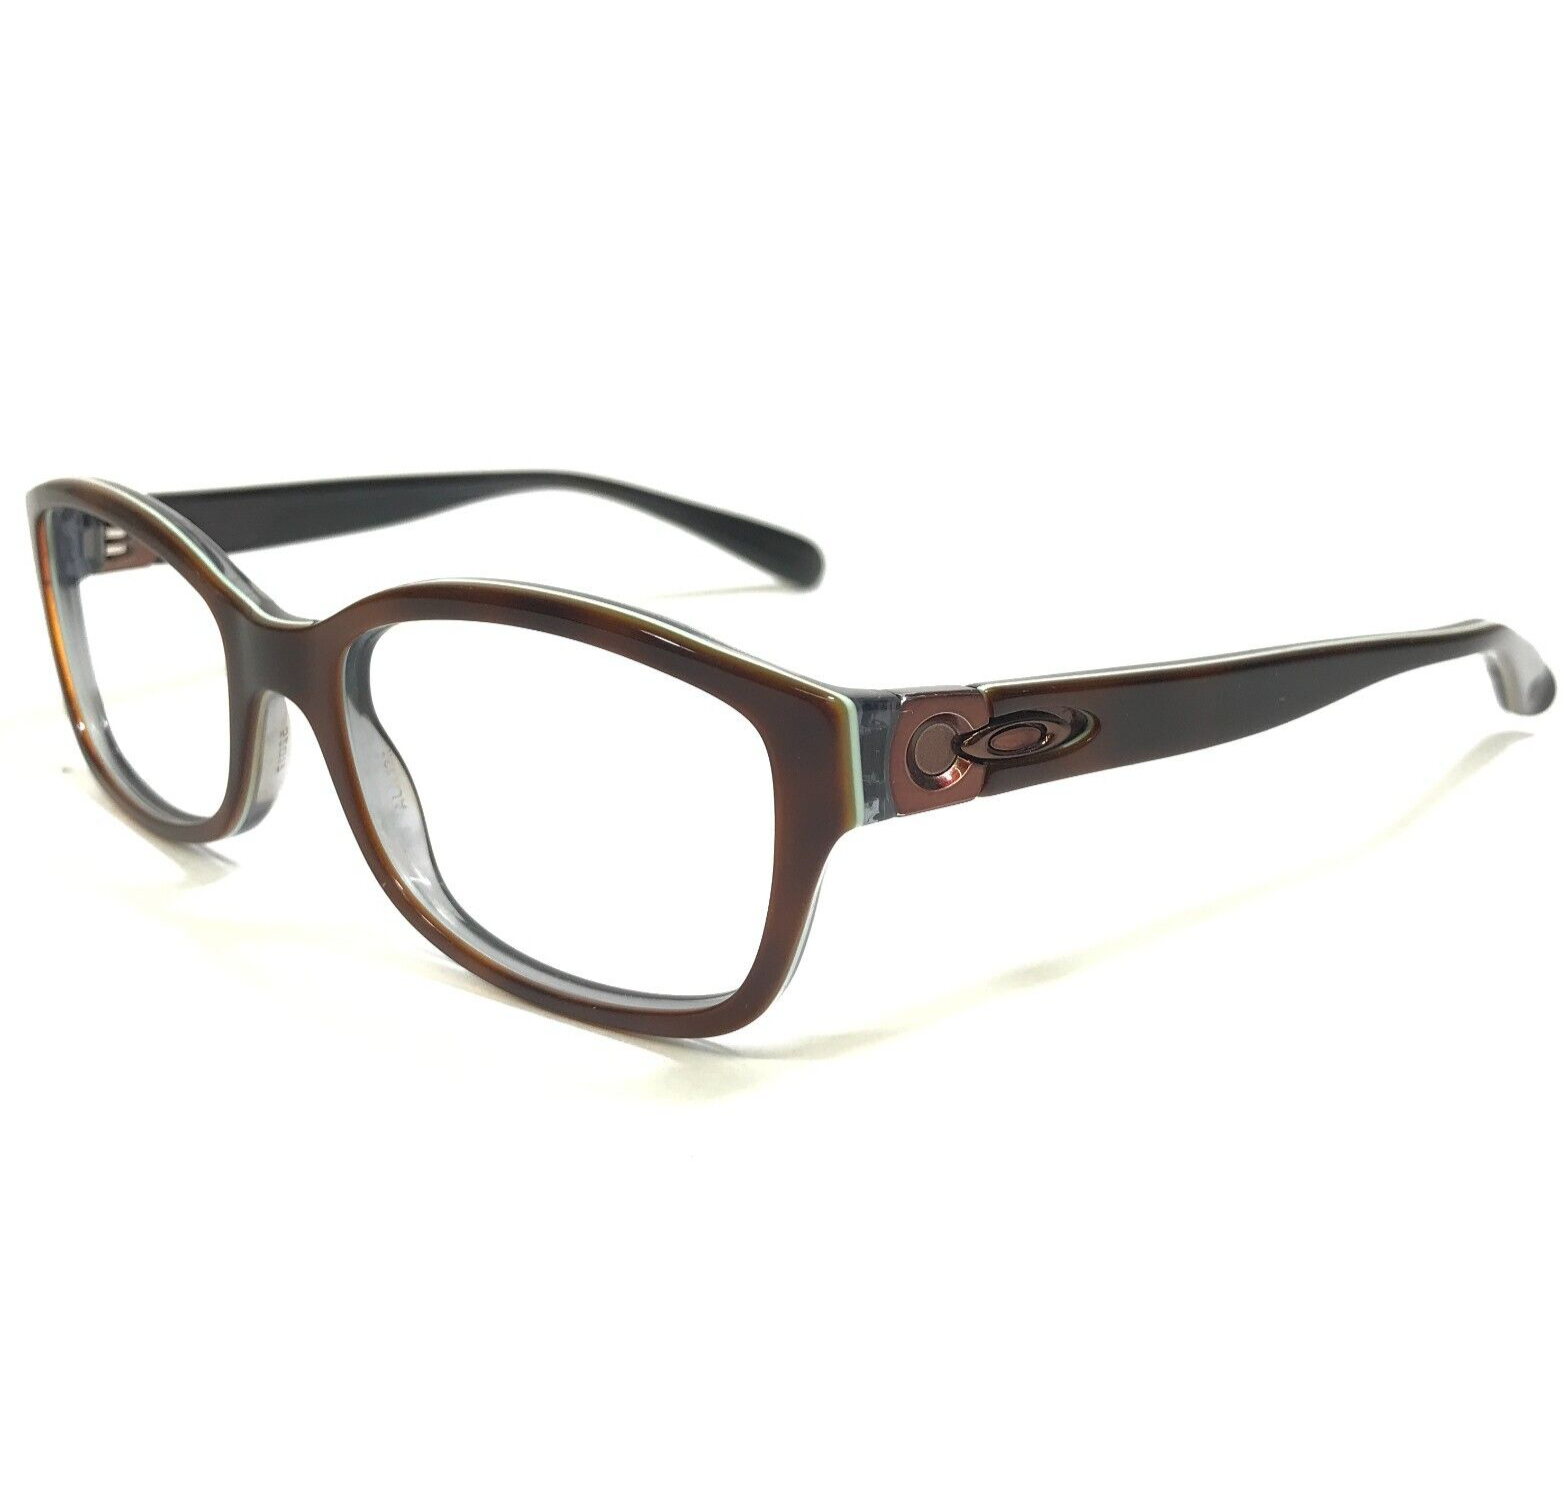 Primary image for Oakley Eyeglasses Frames Junket OX1087-0252 Tortoise Sky Brown Green 52-17-138